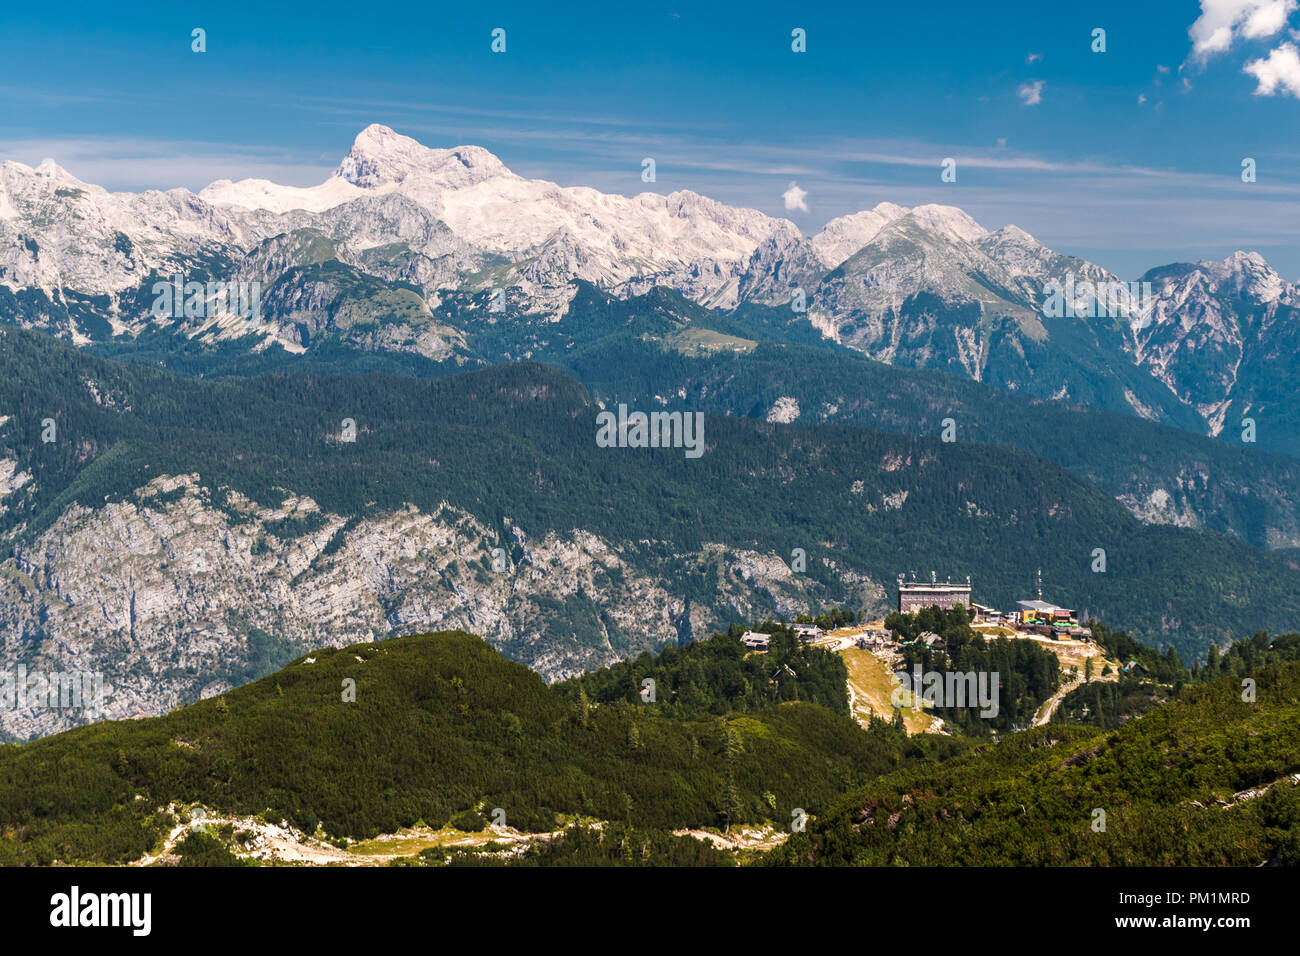 Le Mont Triglav, le plus haut sommet de Slovénie, vue de la zone touristique de Vogel Banque D'Images